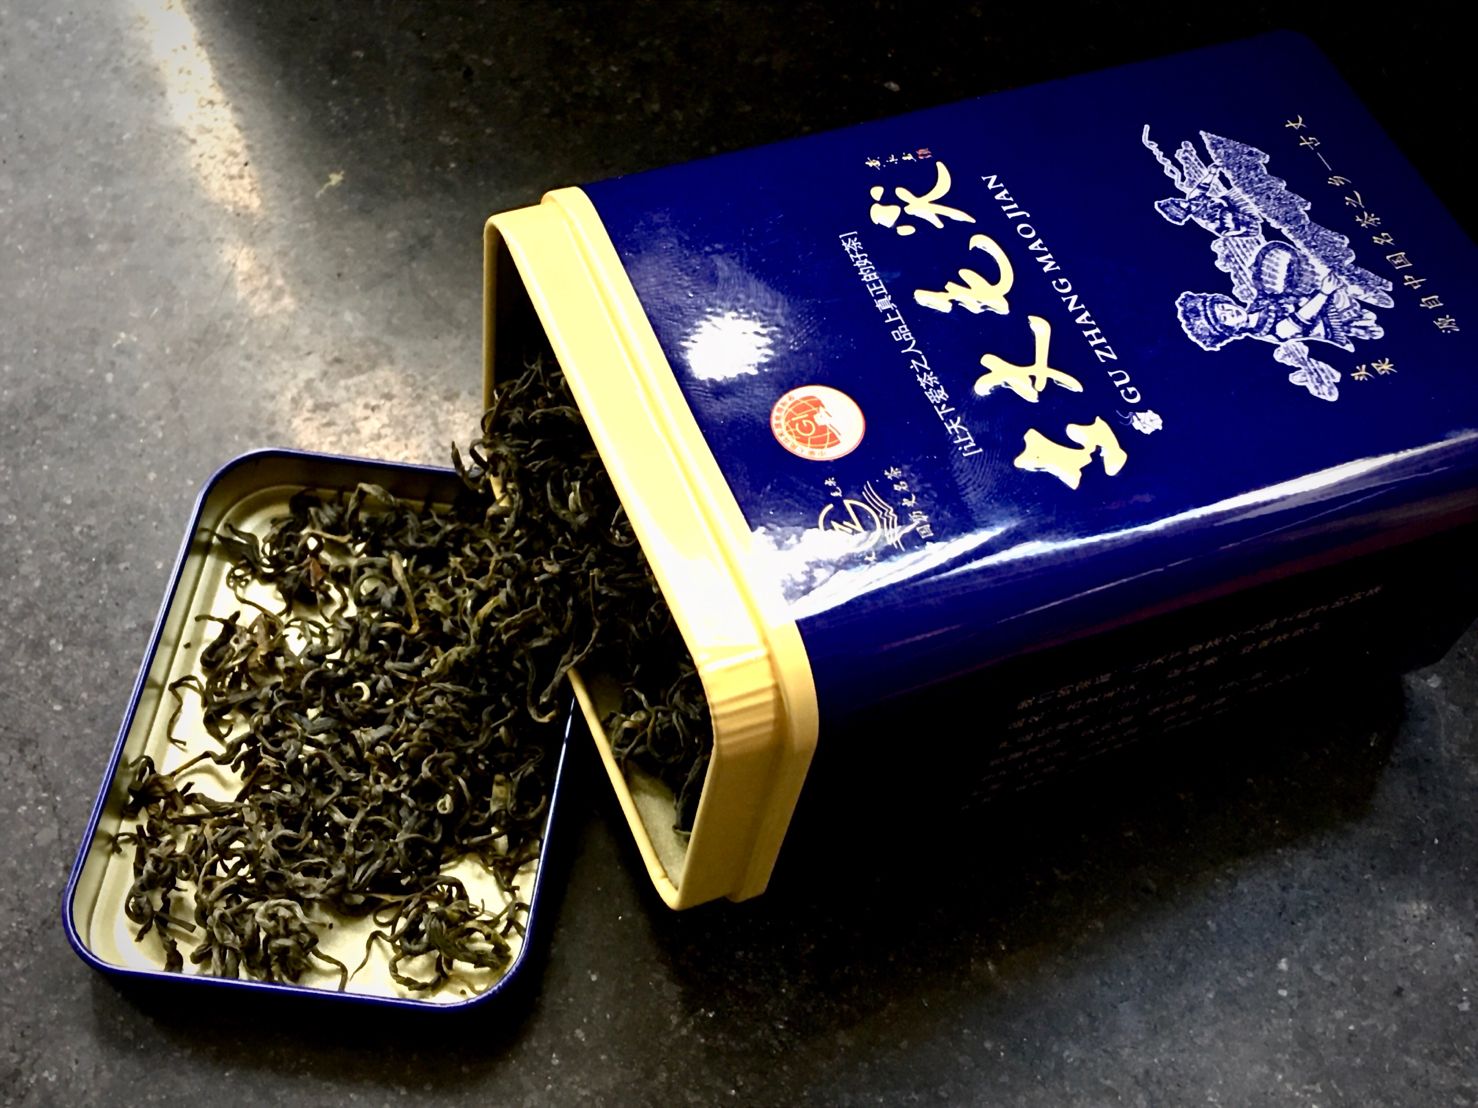 Gǔ Zhàng Máo Jiān Lǜ Chá, 古丈毛尖綠茶, Gu Zhang Mao Jian Green Tea